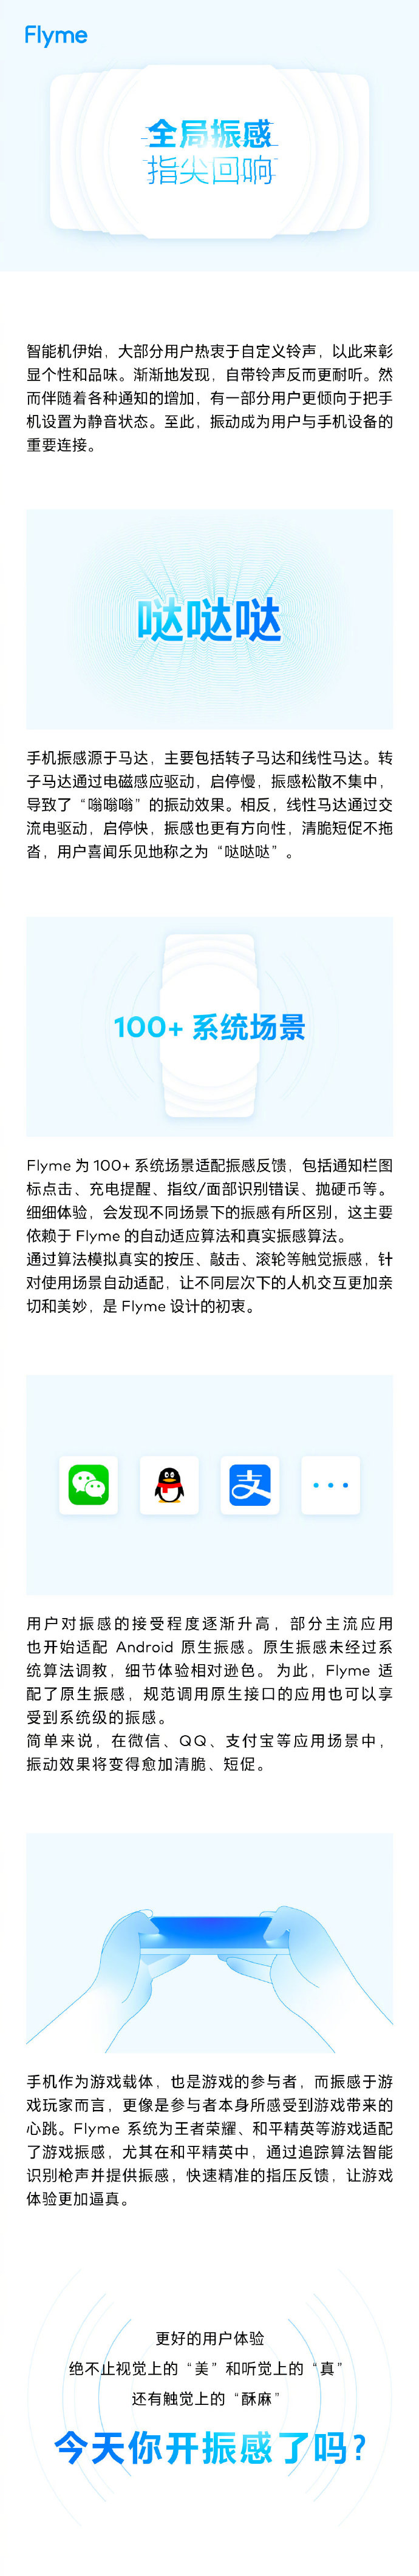 索尼爱立信手机软件，魅族 Flyme：公布有关「全局振感」的干货文章